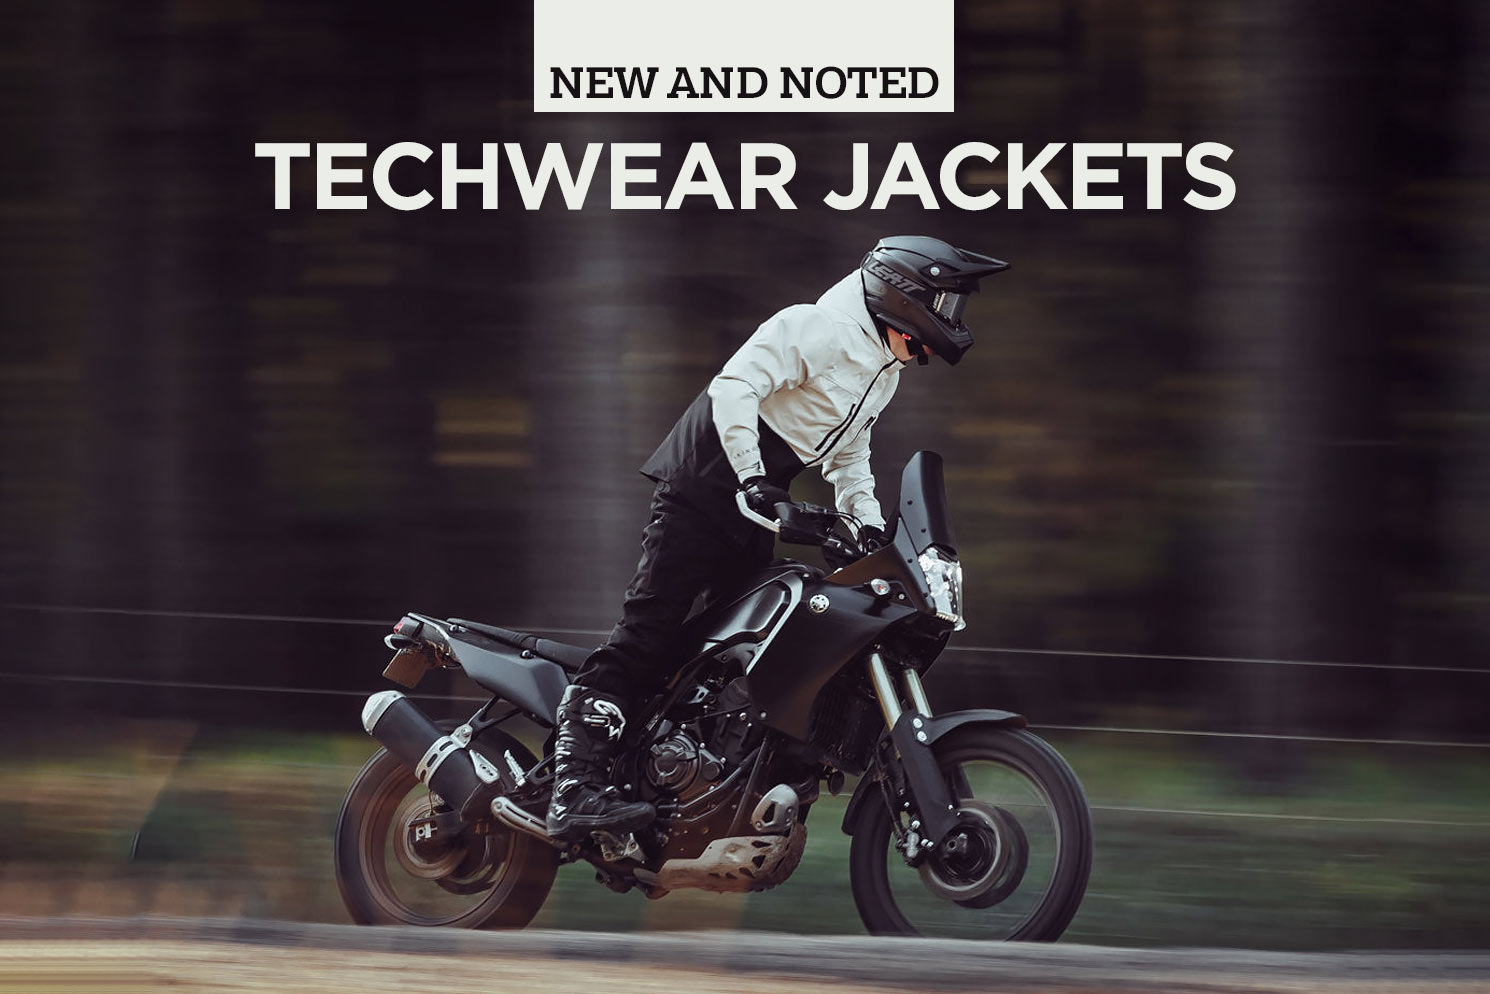 Top 5 techwear motorcycle jackets